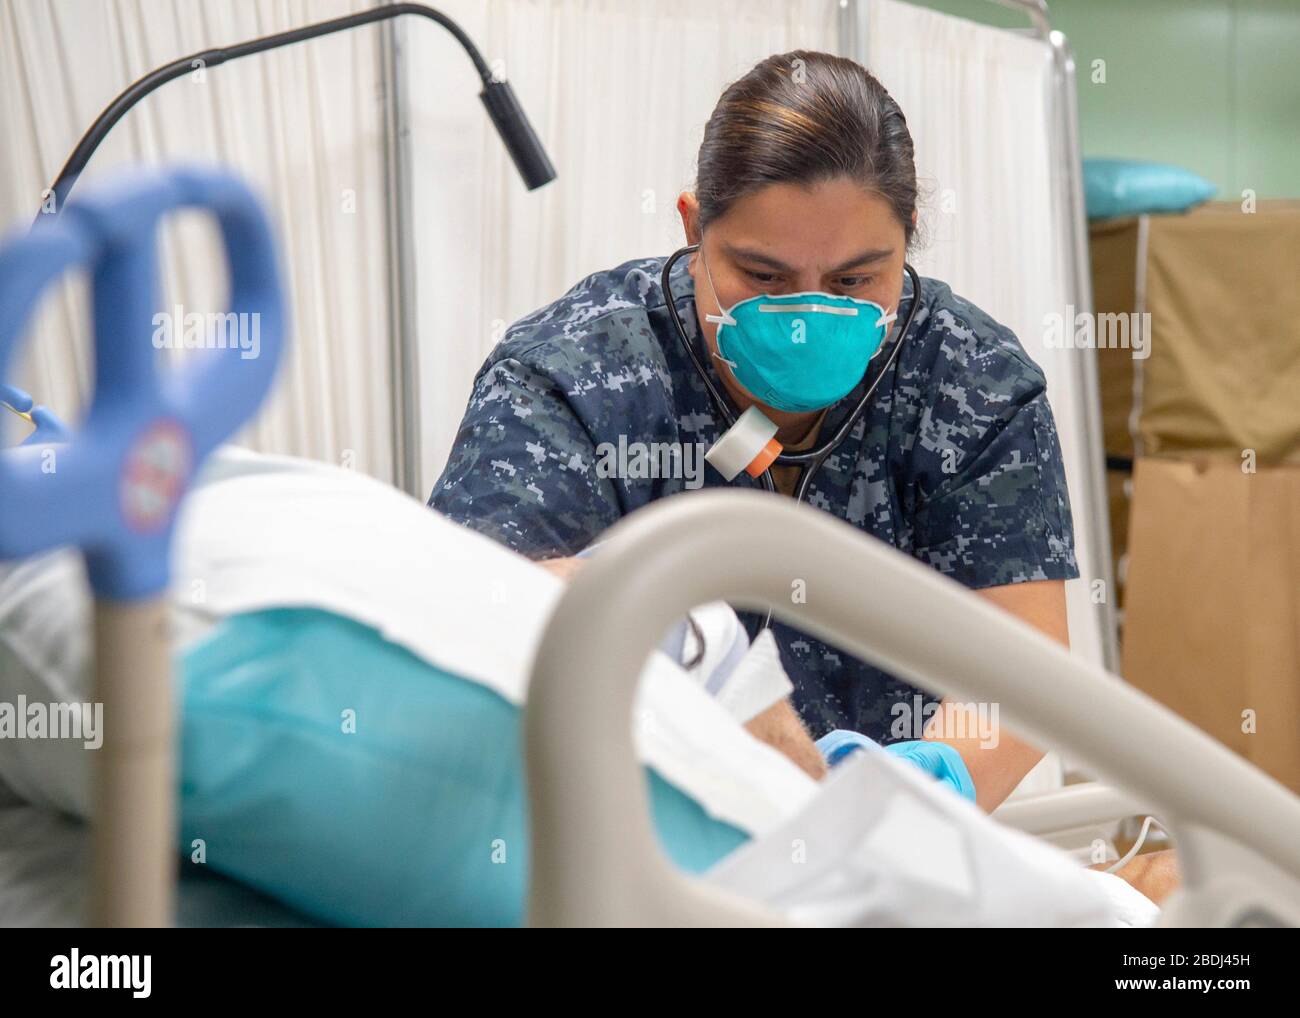 Hôpital de la marine américaine Corpsman 1ère classe Leslie Simmons, effectue une évaluation sur un patient de soins respiratoires à bord du navire hospitalier USNS Mercy déployé à l'appui de la COVID-19, pandémie de coronavirus amarrée le 7 avril 2020 à Los Angeles, Californie. Banque D'Images